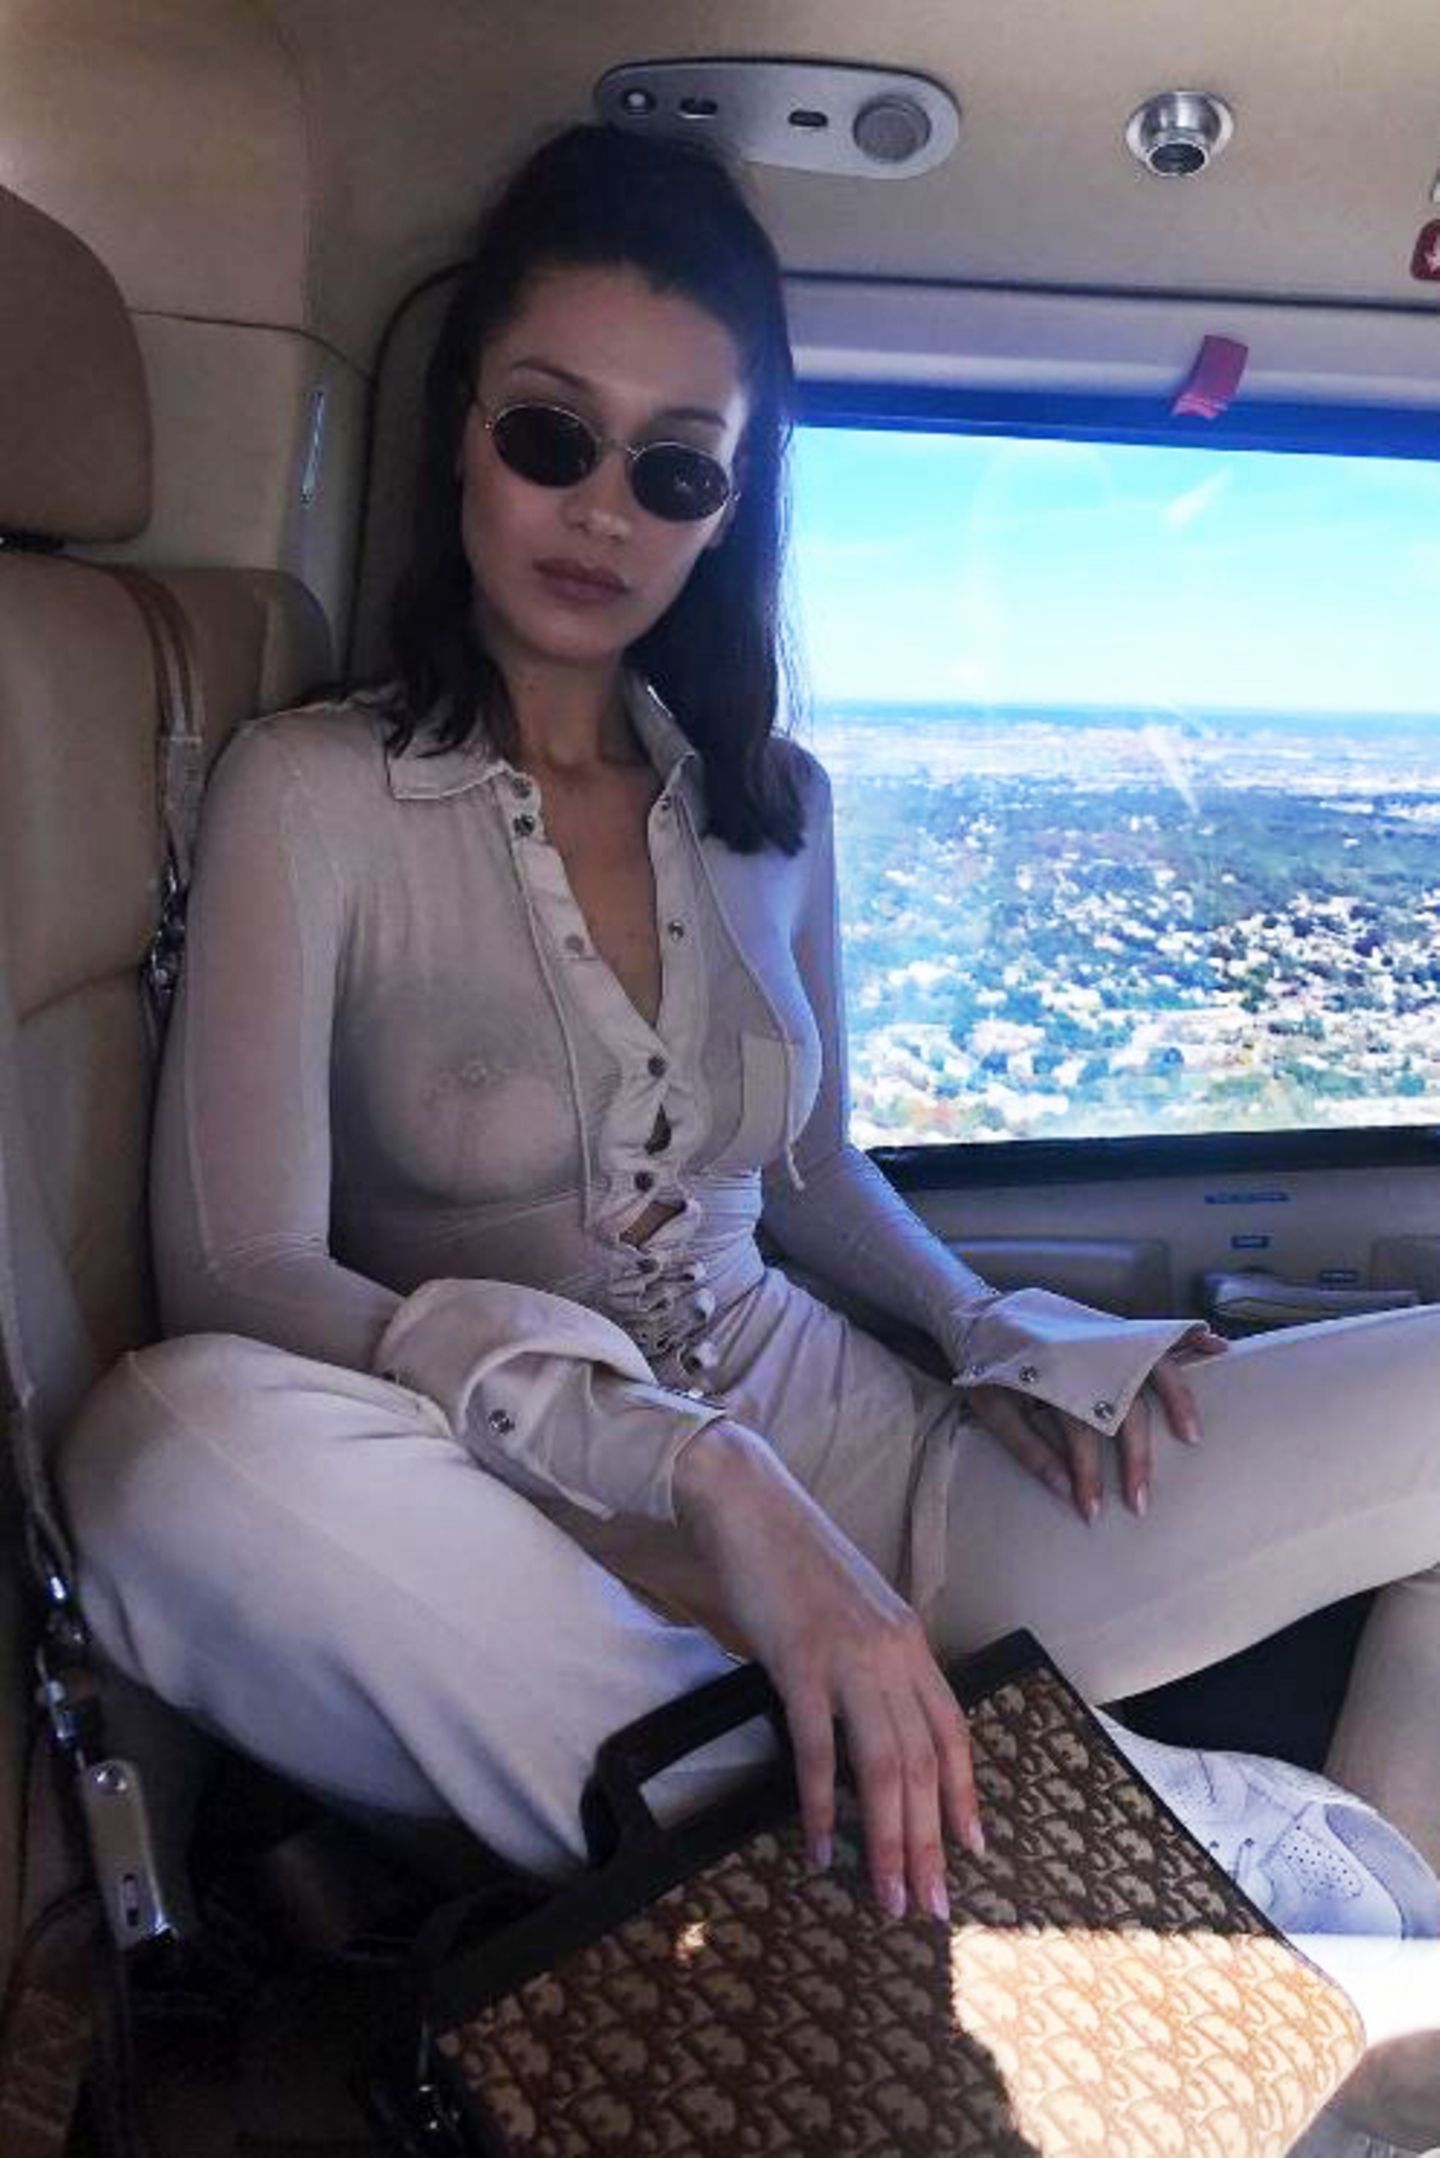 Ob Model Bella Hadid ihr Outfit auf die Inneneinrichtung des Fliegers abgestimmt hat? Nichtsdestotrotz schaut man vor allem auf ein nicht vorhandenes Detail: Bella verzichtet getrost auf ihren BH und zeigt das auch gerne allen 